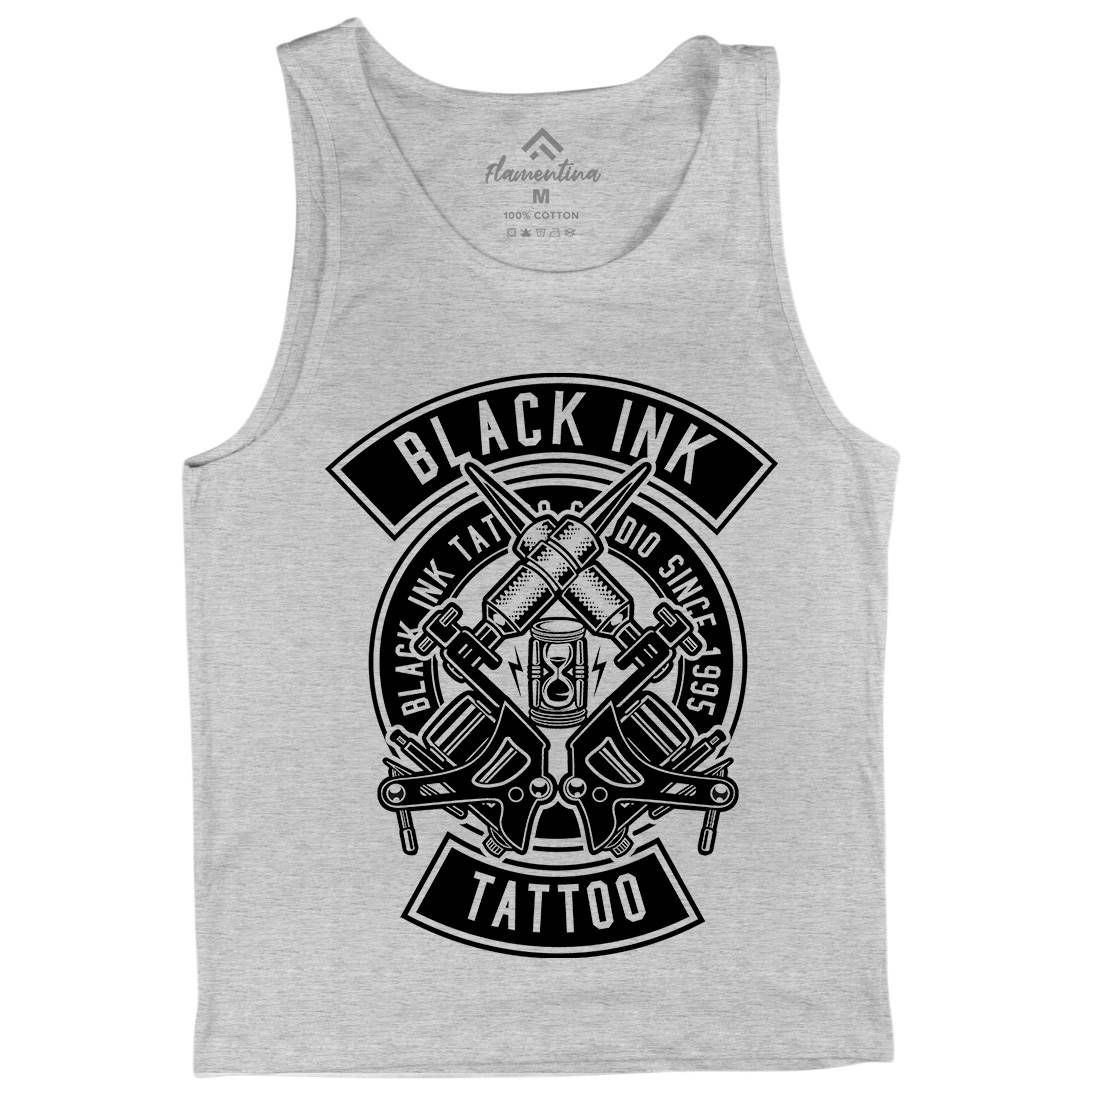 Black Ink Mens Tank Top Vest Tattoo B500